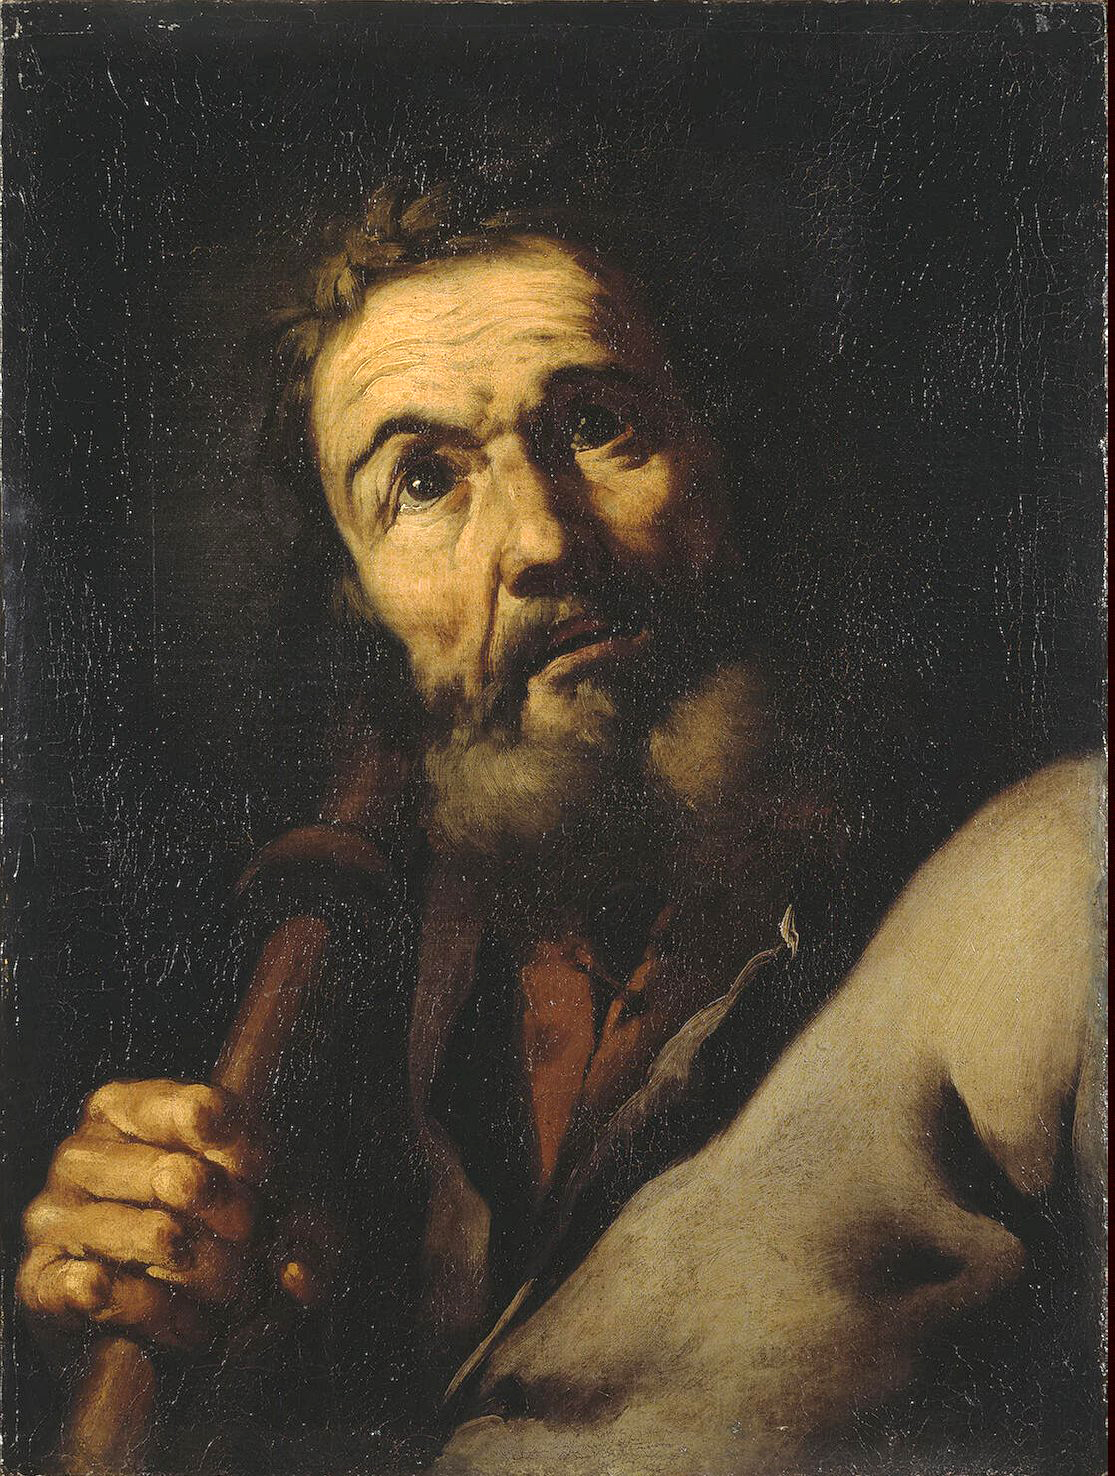 Jusepe+de+Ribera-1591-1652 (56).jpg